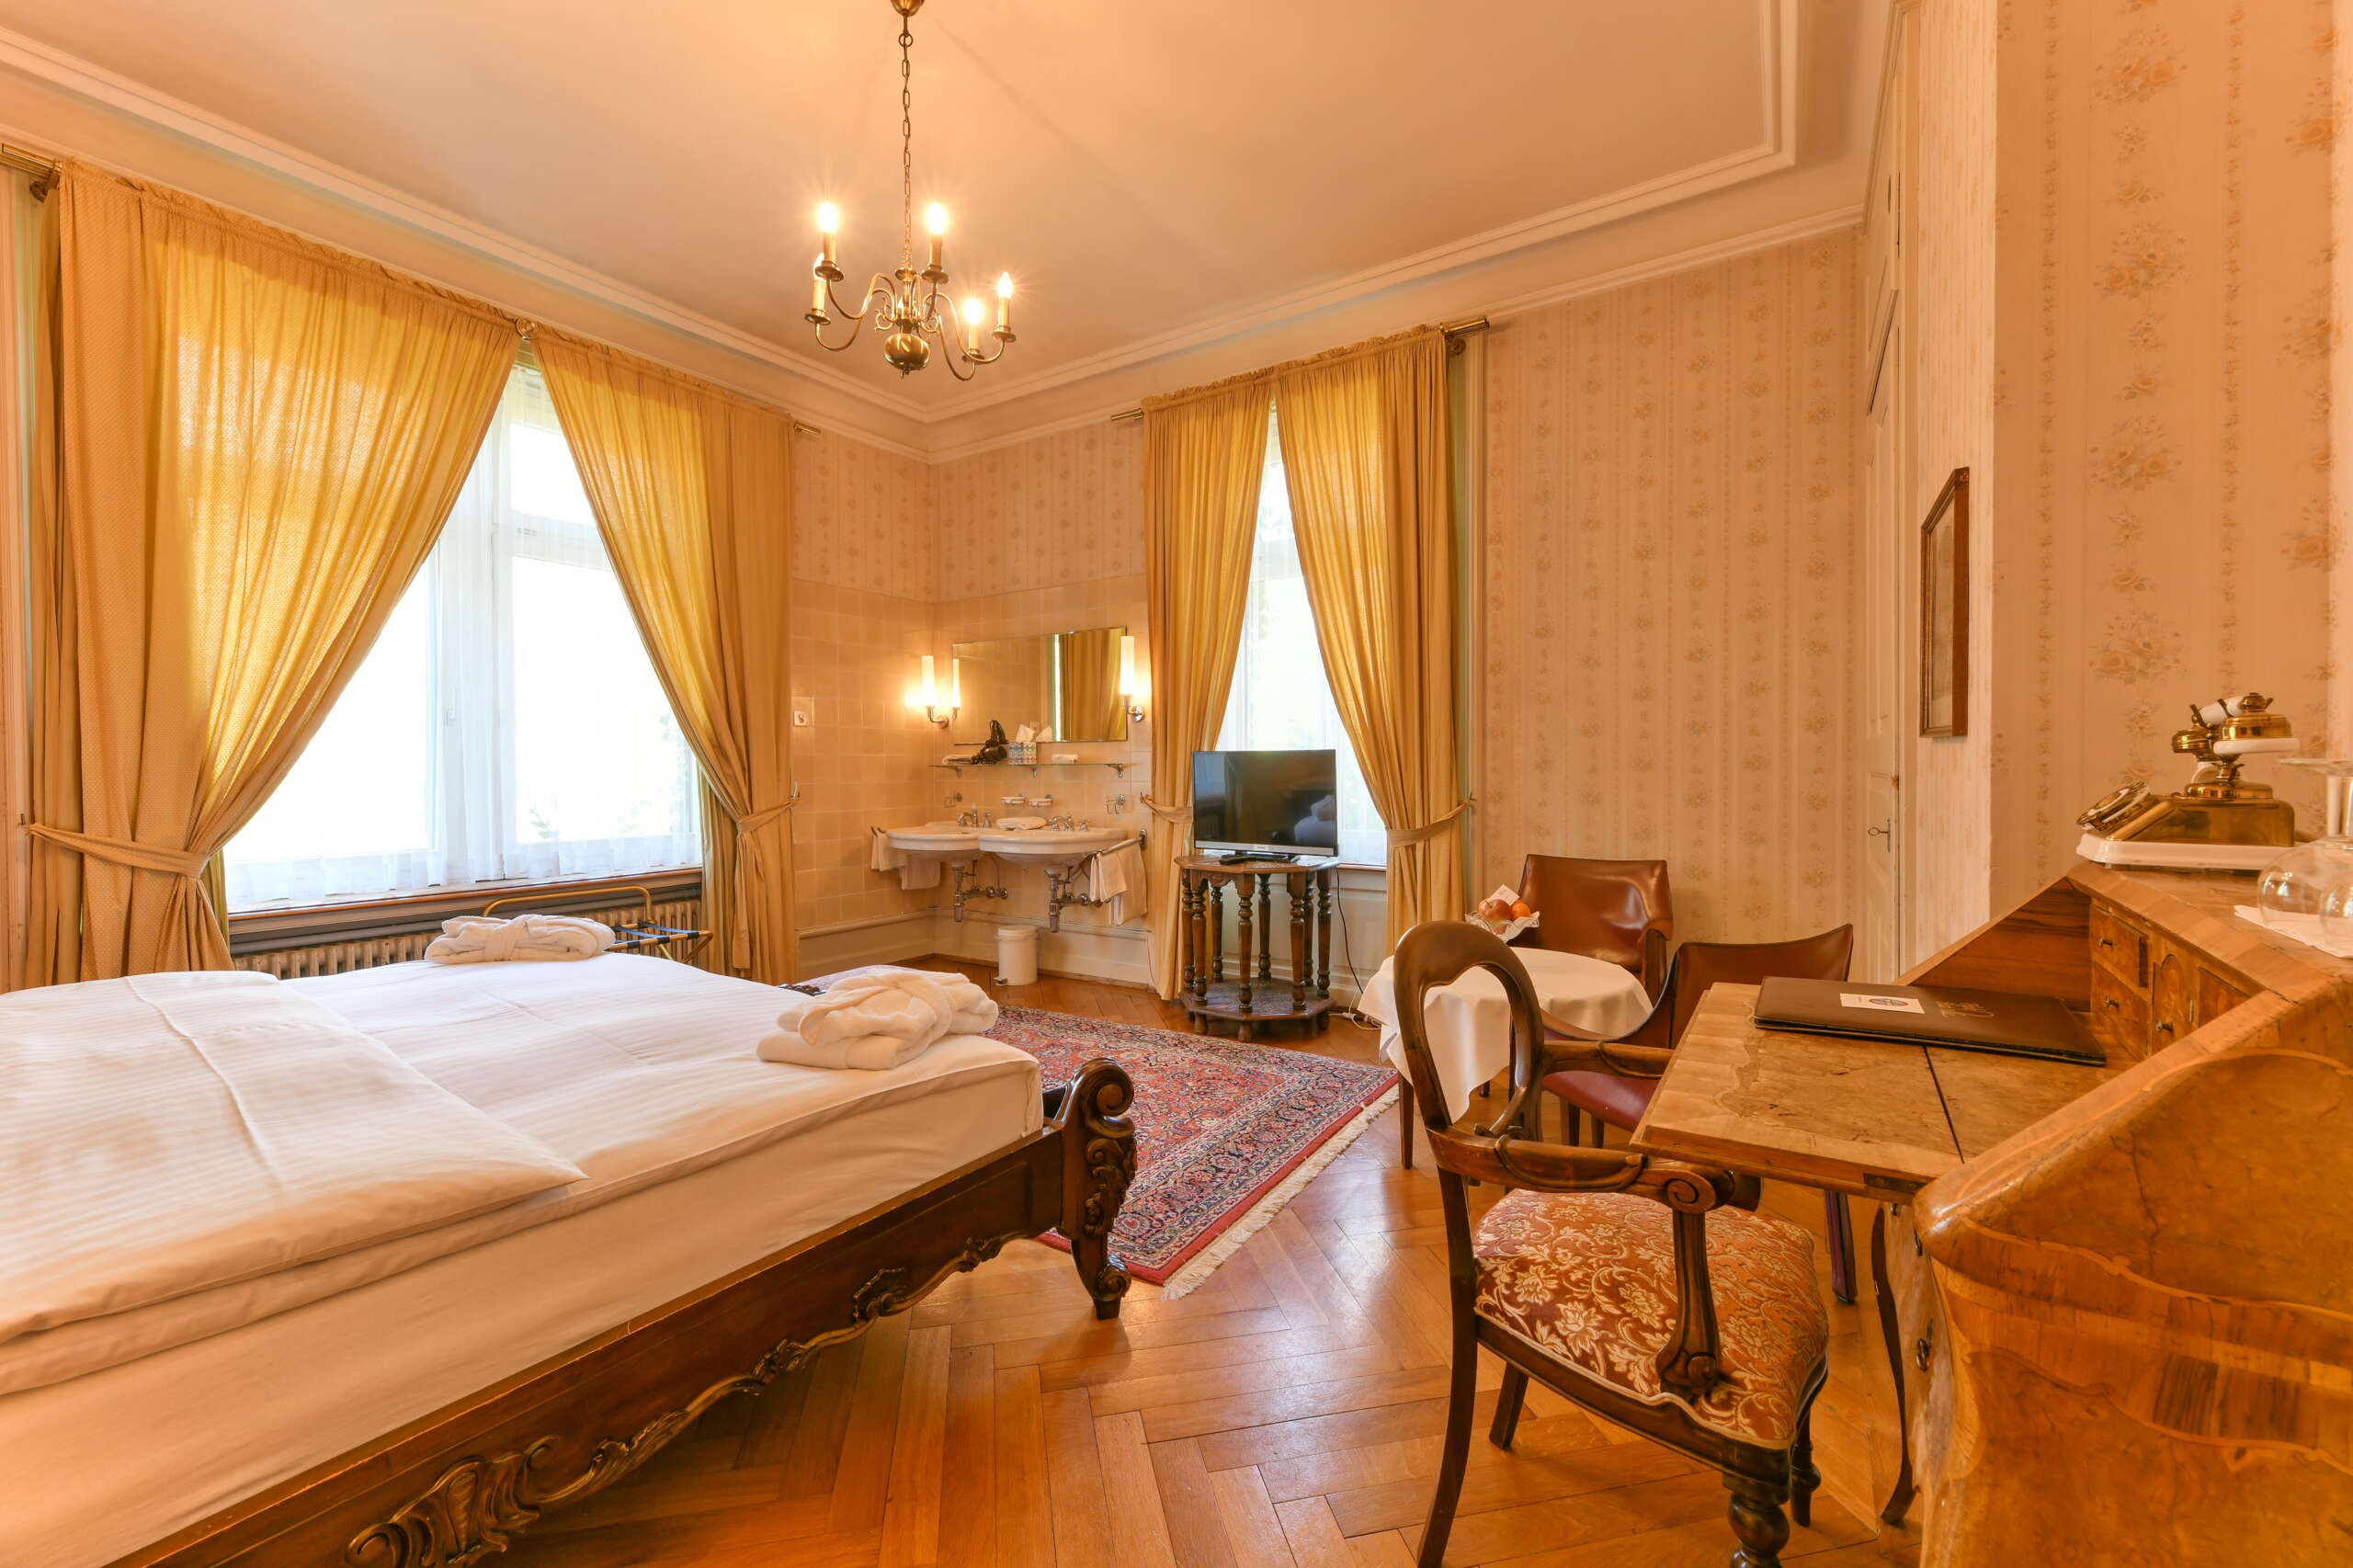 Ein Hotelzimmer stilvoll eingerichtet mit Biedermeiermöbeln, gelben Vorhängen, einem Teppich und passender Tapete.